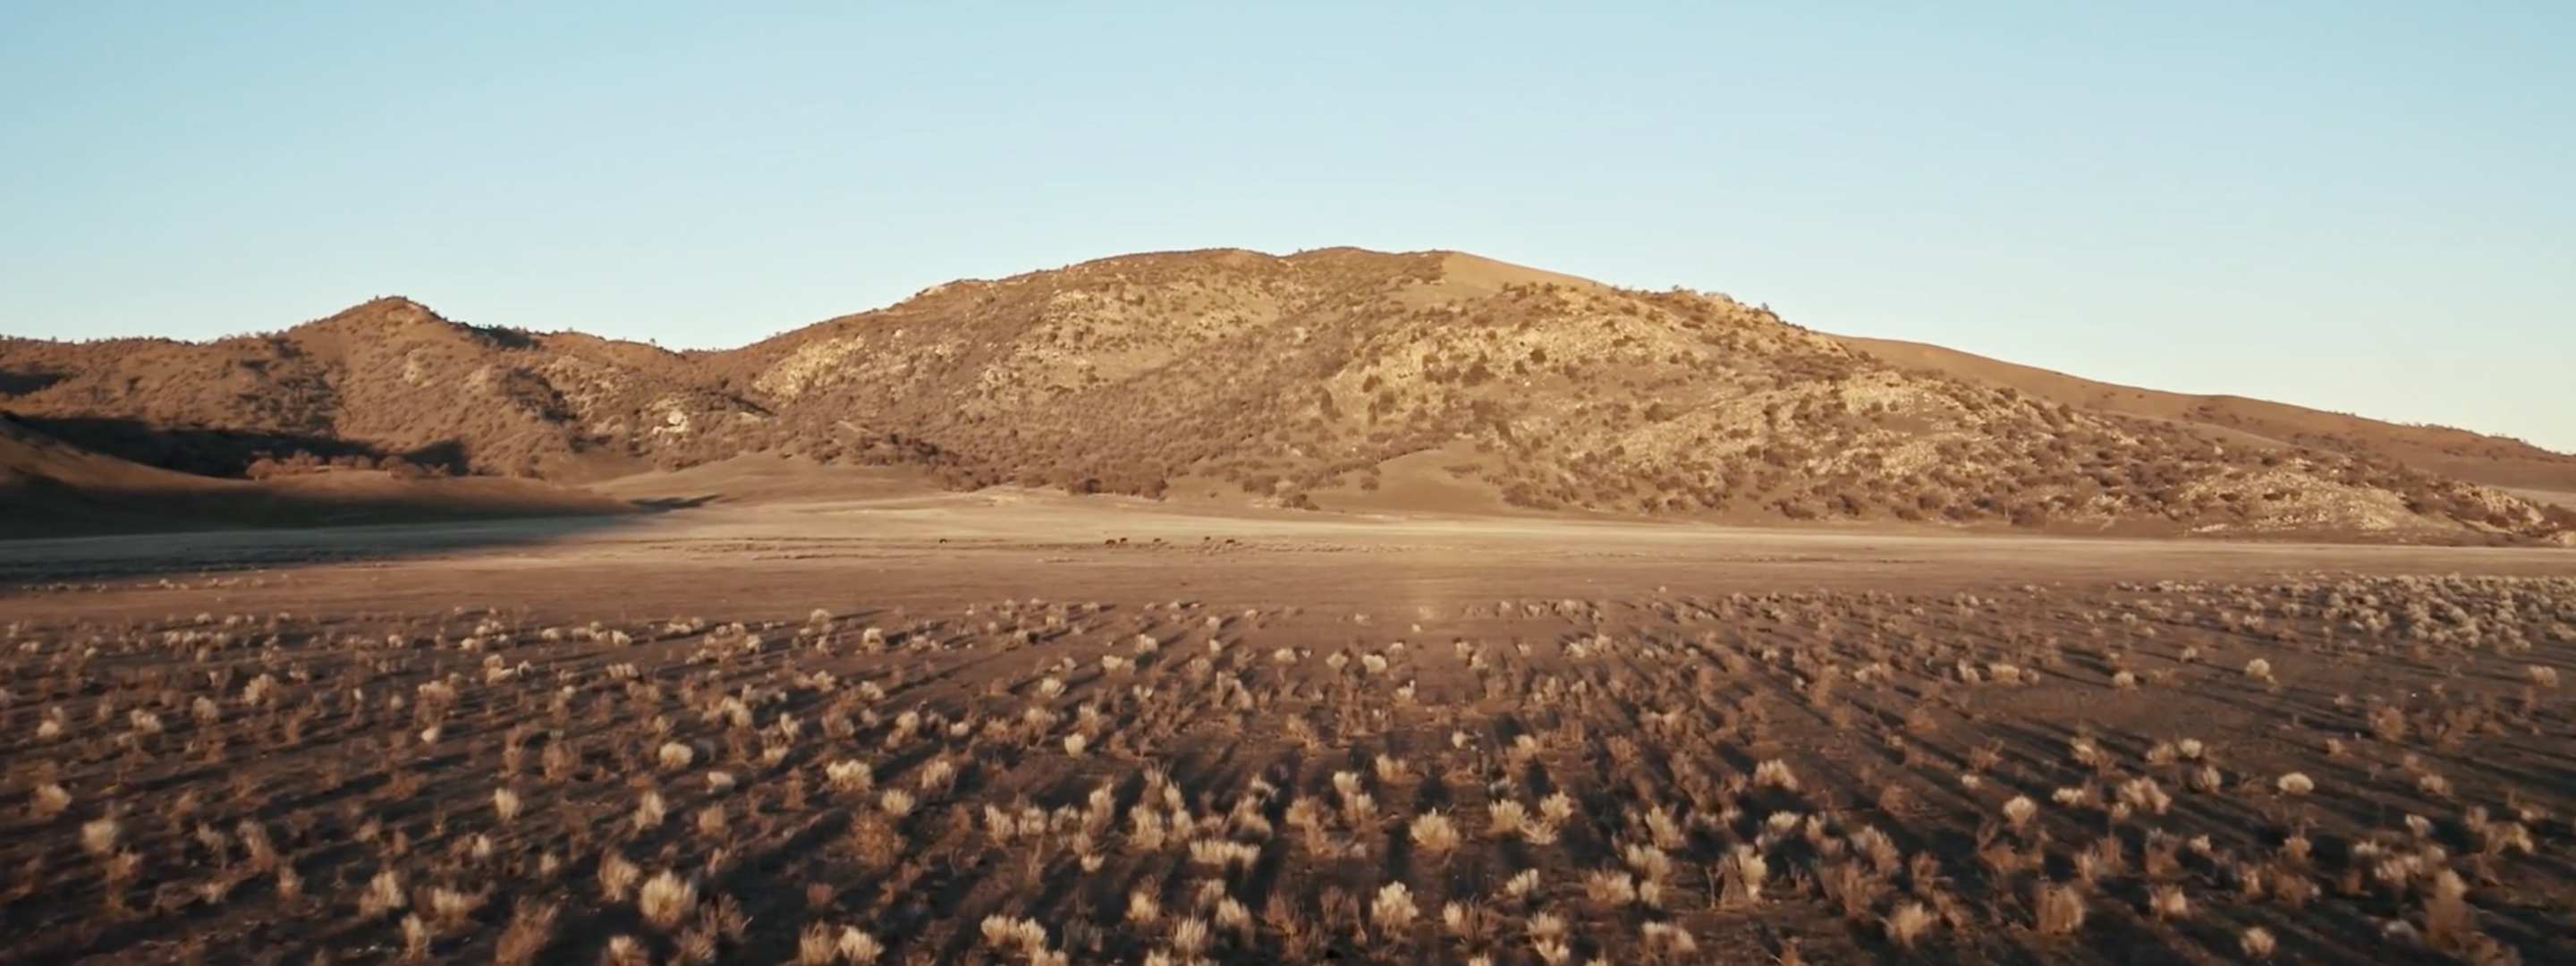 <a href="https://www.capgemini.com/news/inside-stories/mojave-desert/"></a>El desierto de Mojave: datos de tortugas y neumáticos